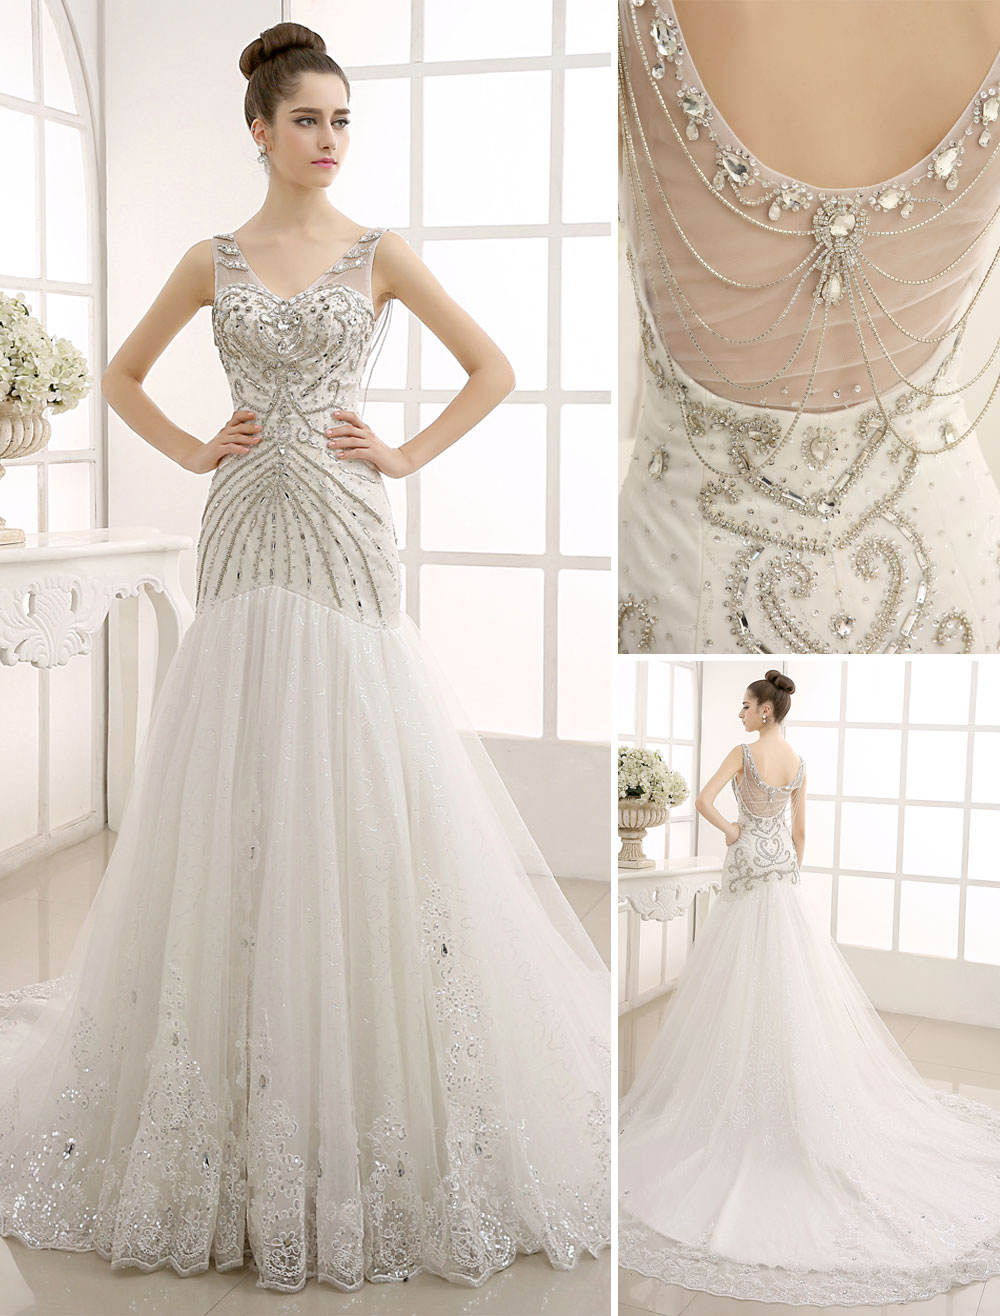 Luxus menyasszonyi ruha 2 színárnyalatban (A Ft ár tájékoztató jellegű)